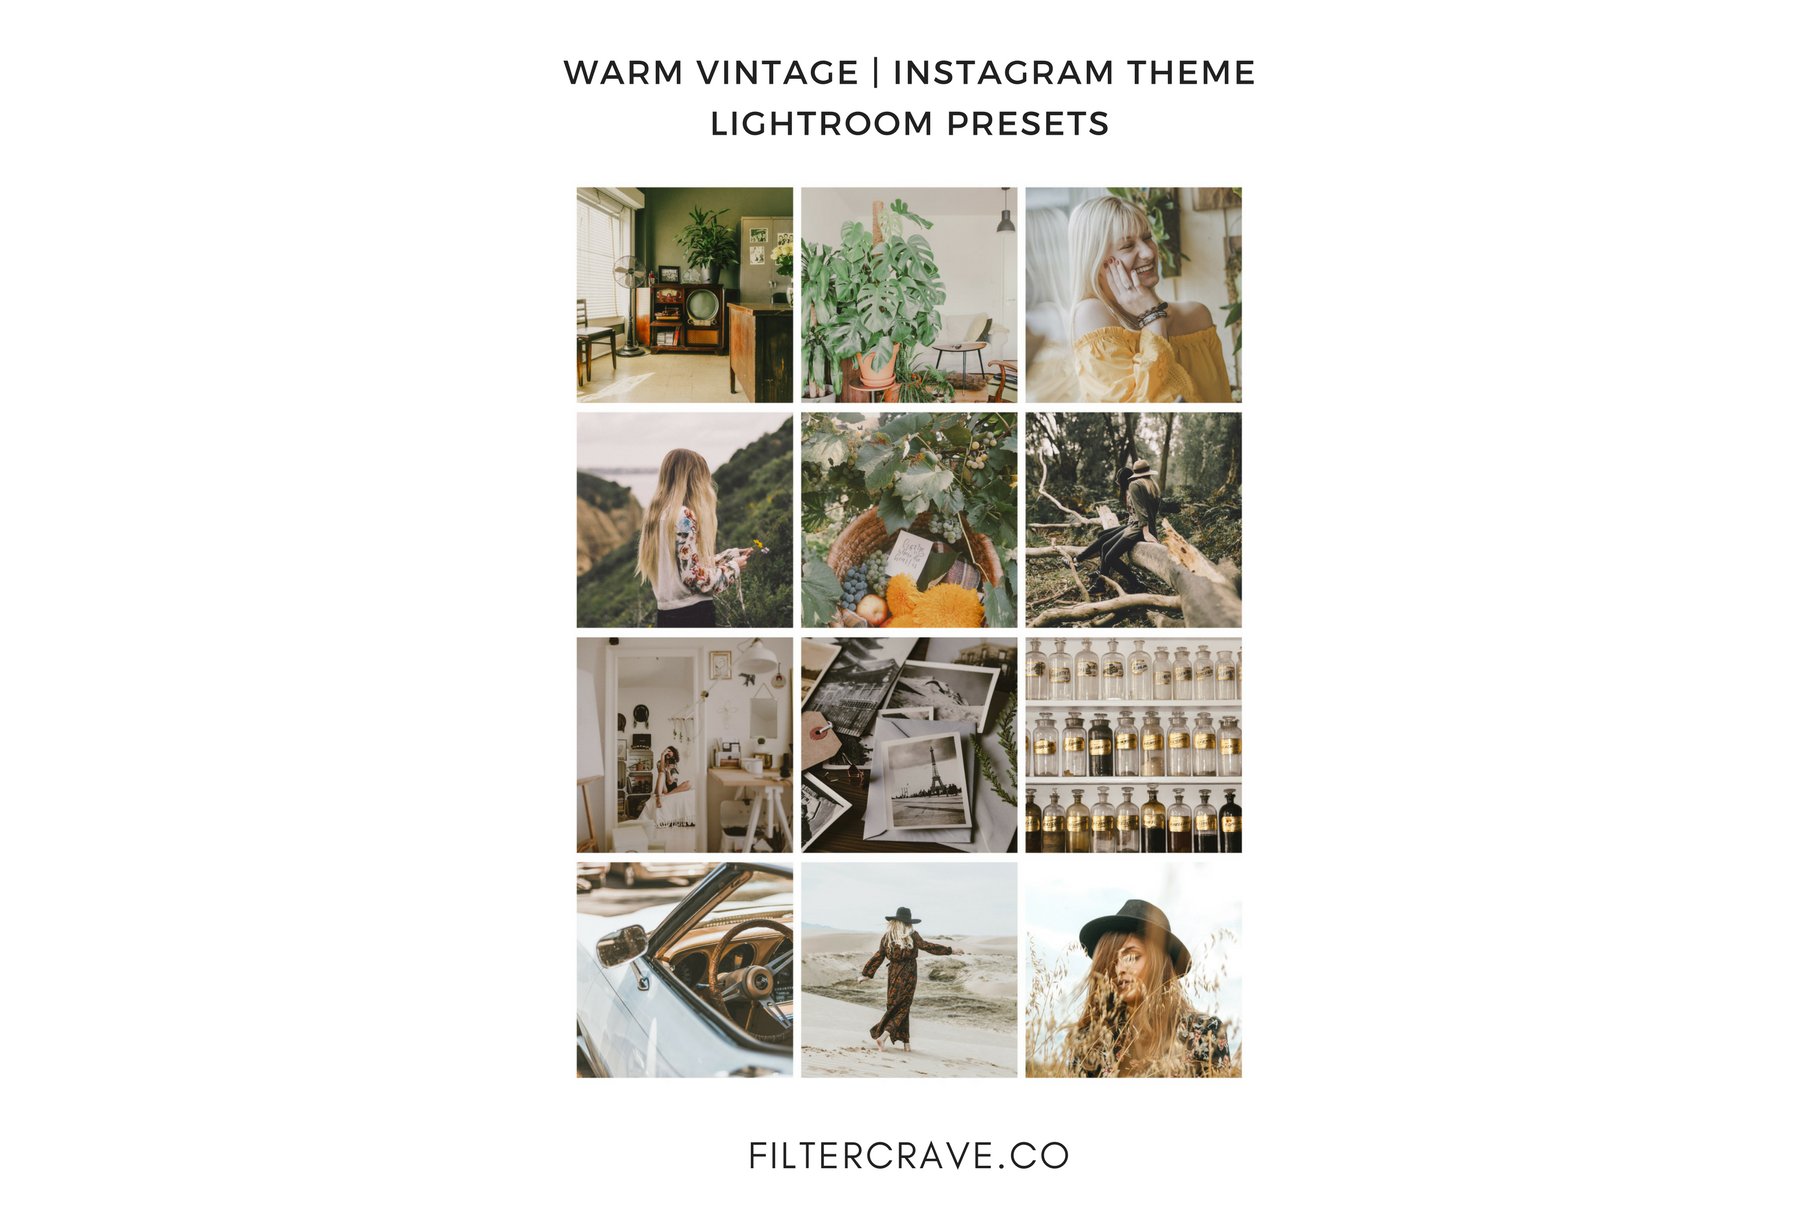 warm vintage lightroom presets instagram theme for bloggers filtercrave 546